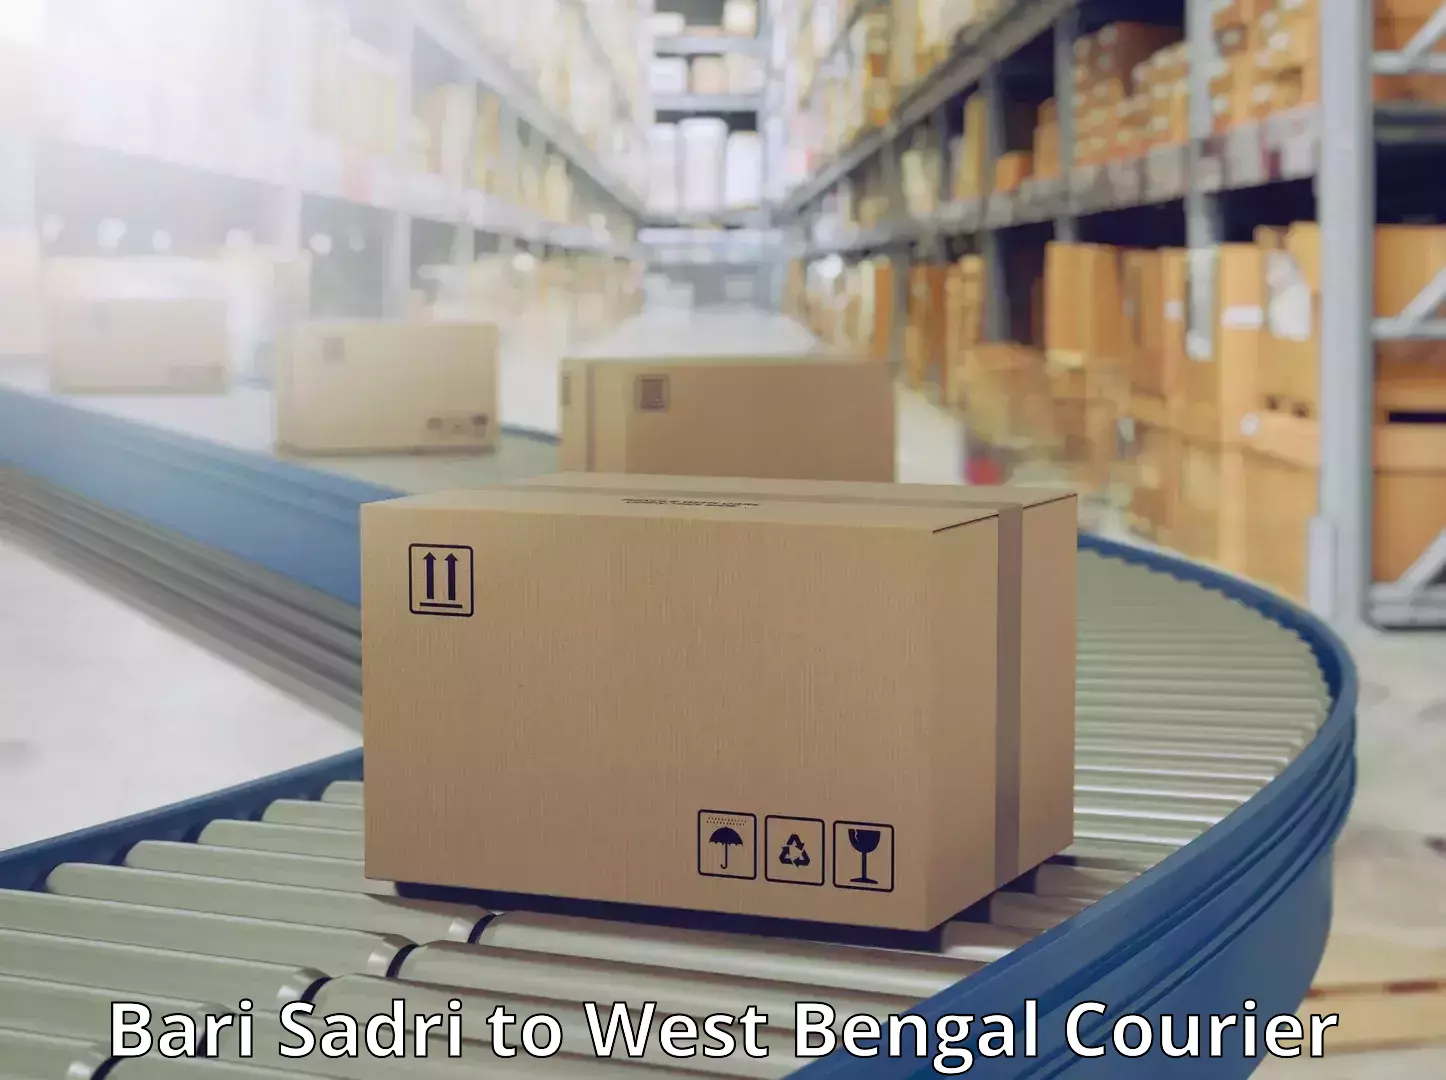 Express mail solutions Bari Sadri to West Bengal